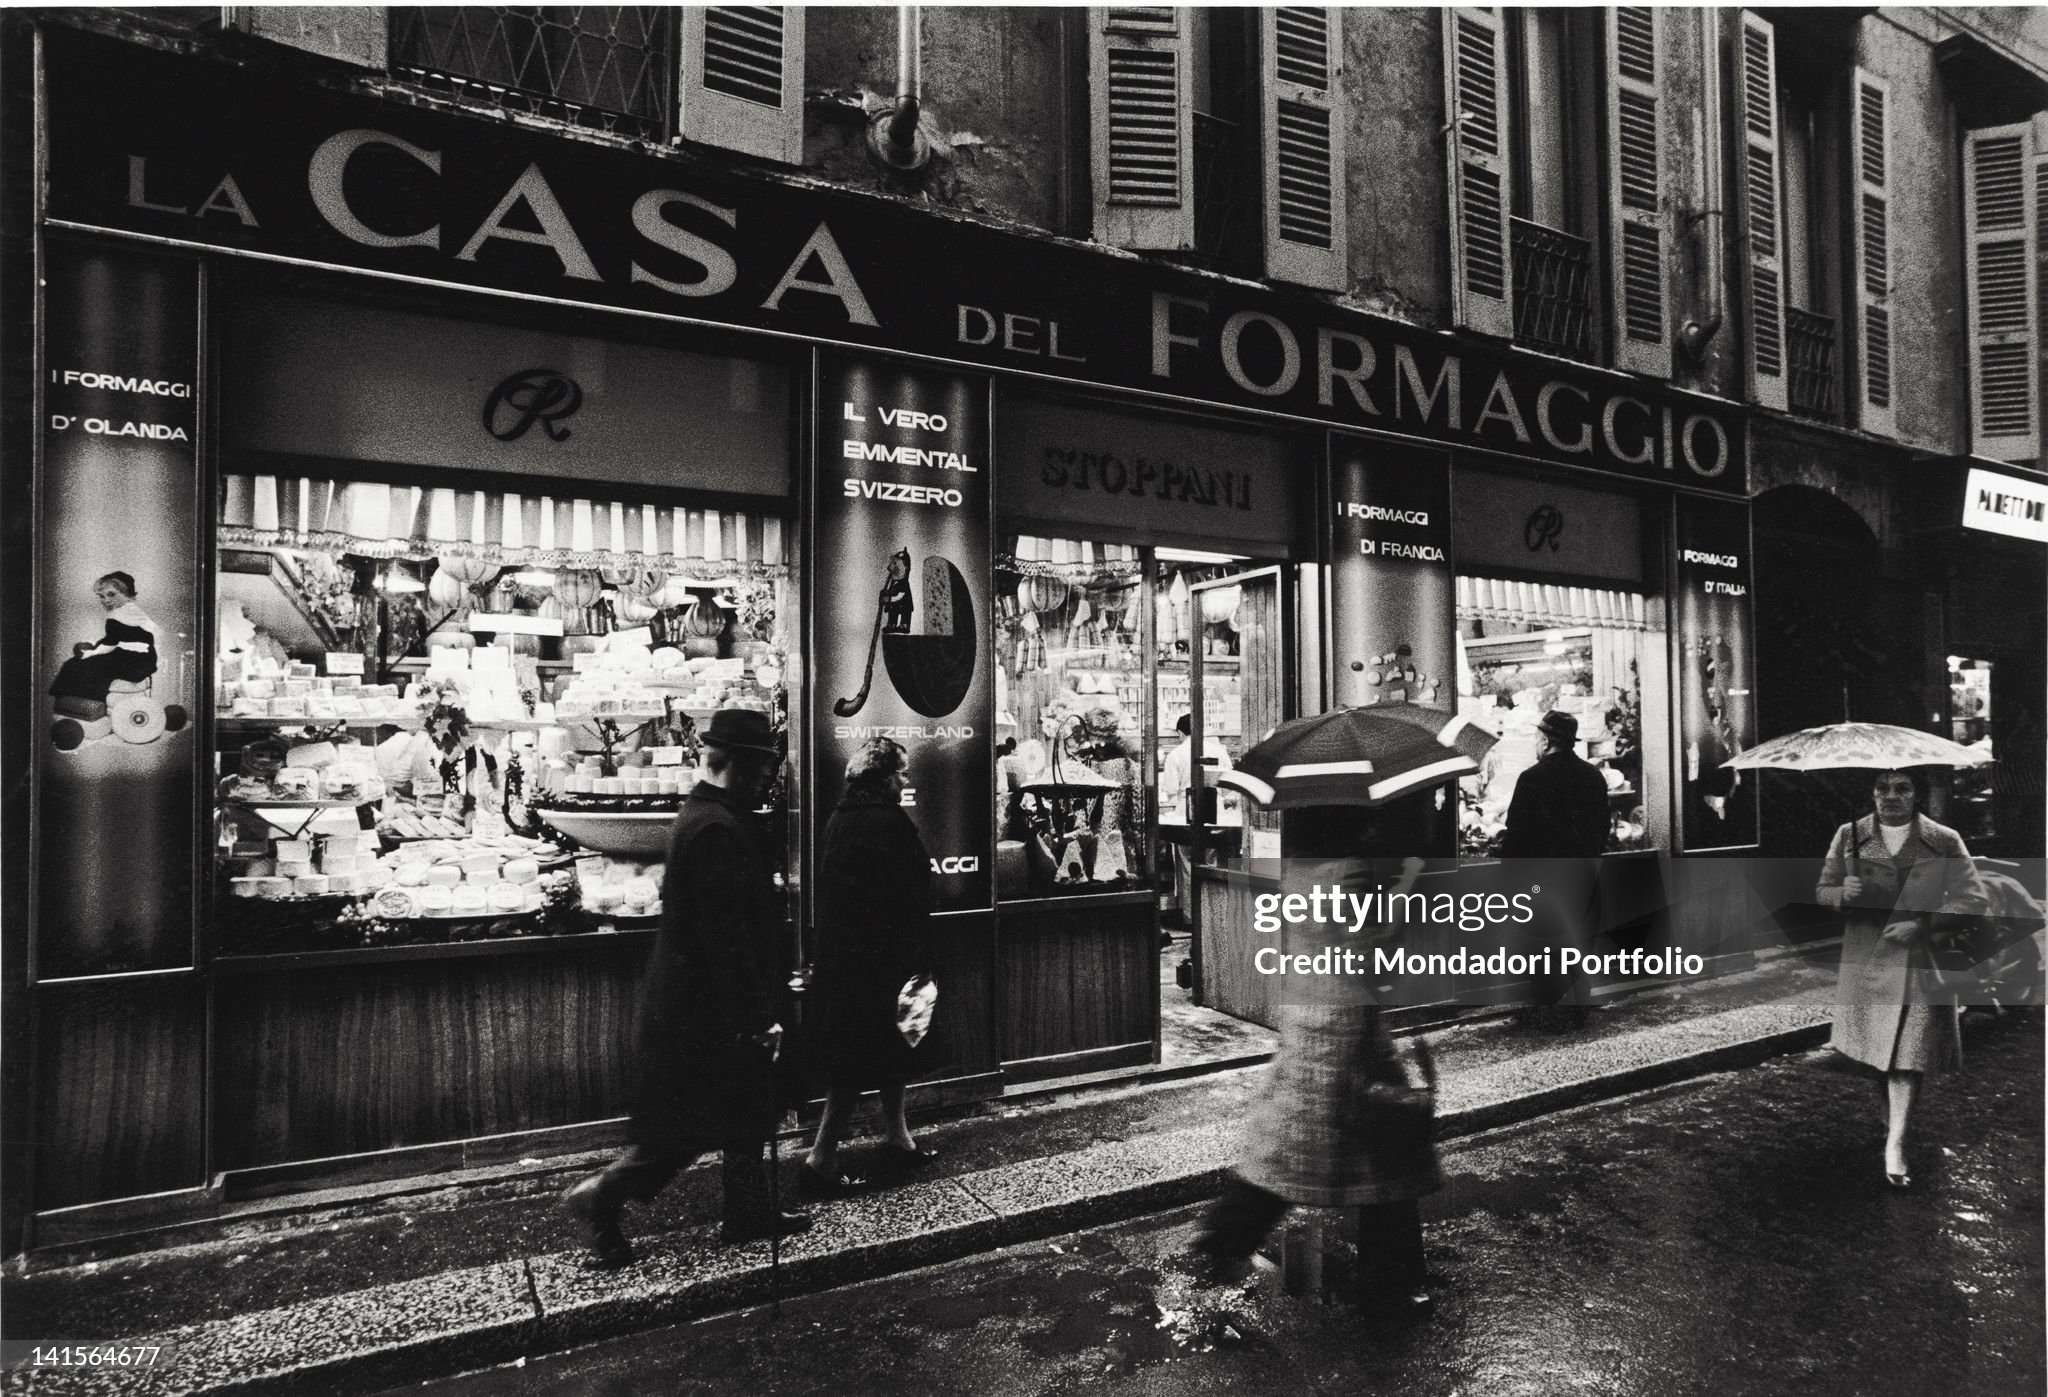 'La casa del formaggio', a well-known shop in Milan, in 1973. 